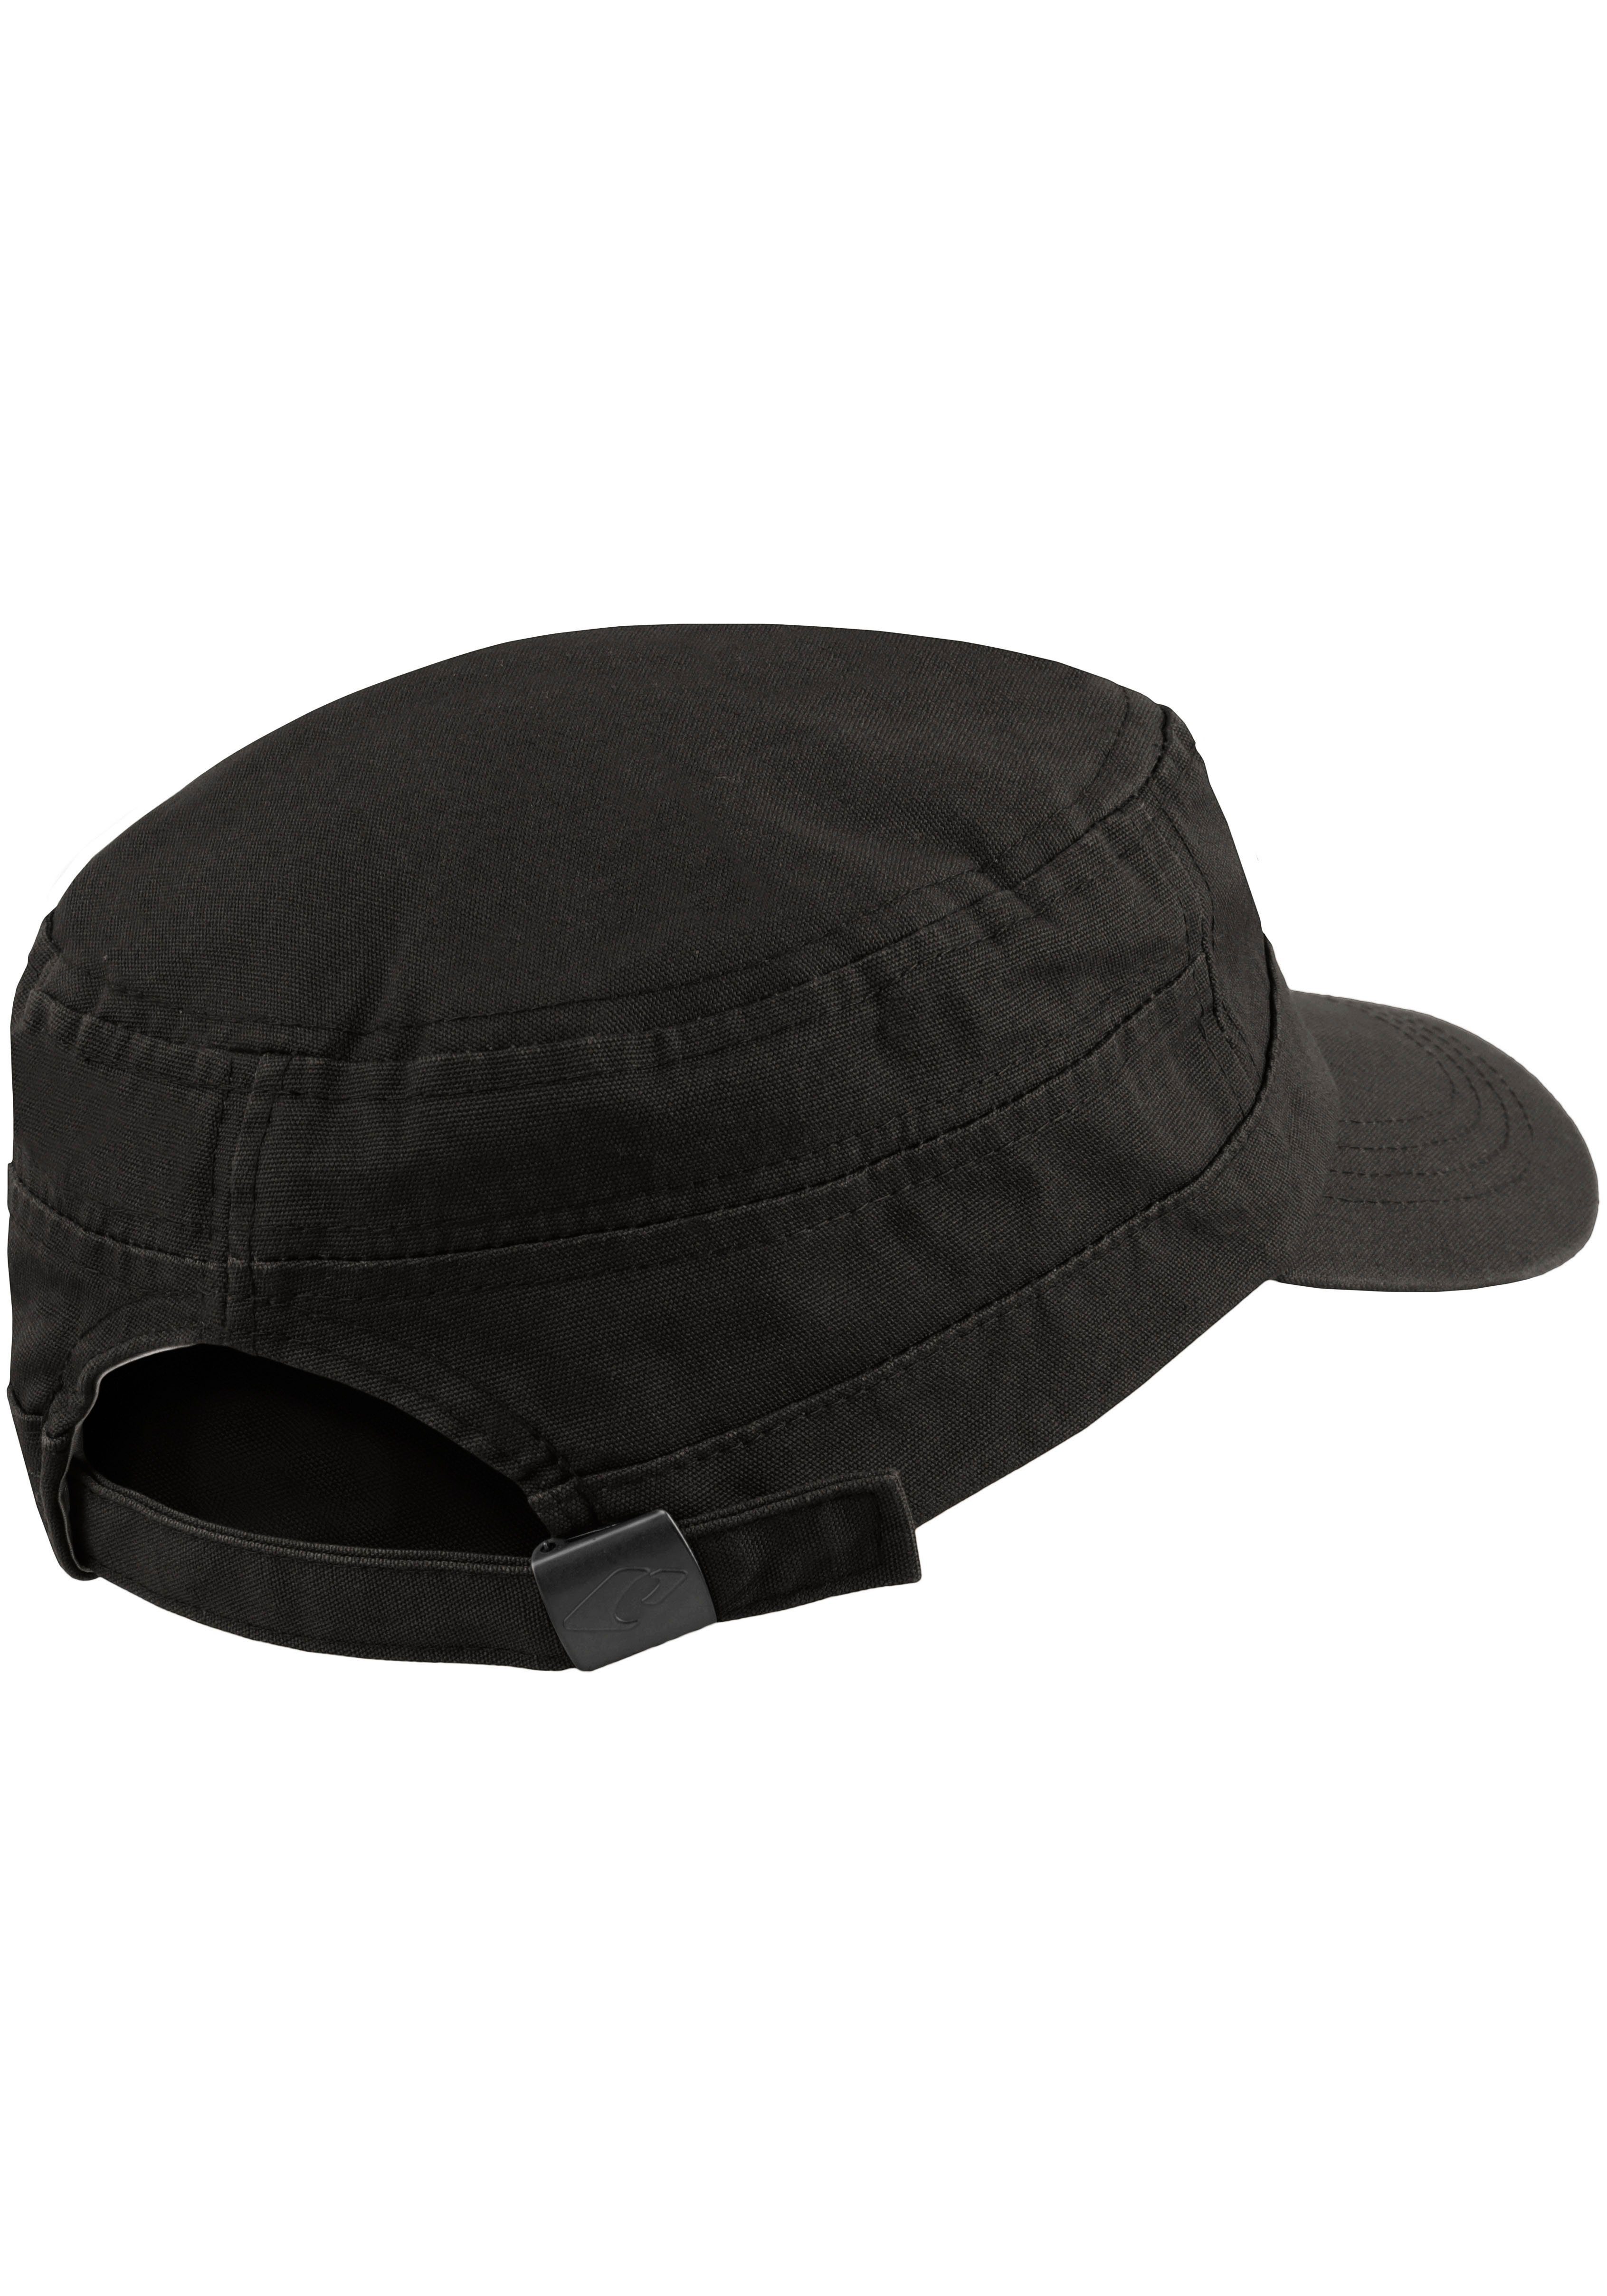 El Army Hat Paso aus reiner Cap schwarz One Size chillouts atmungsaktiv, Baumwolle,